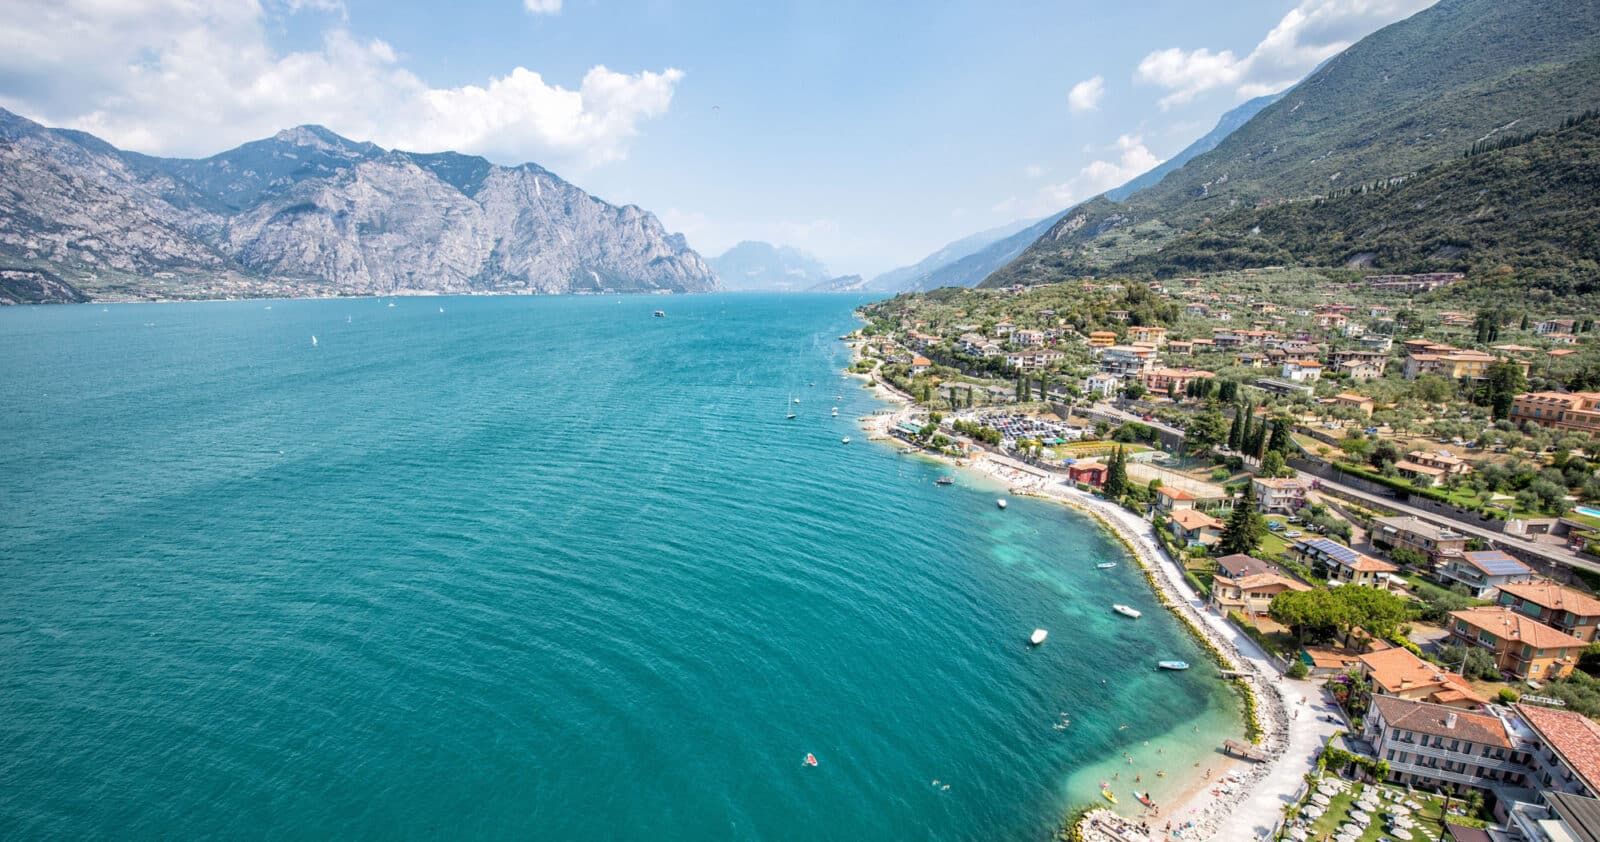 Things to Do in Lake Garda